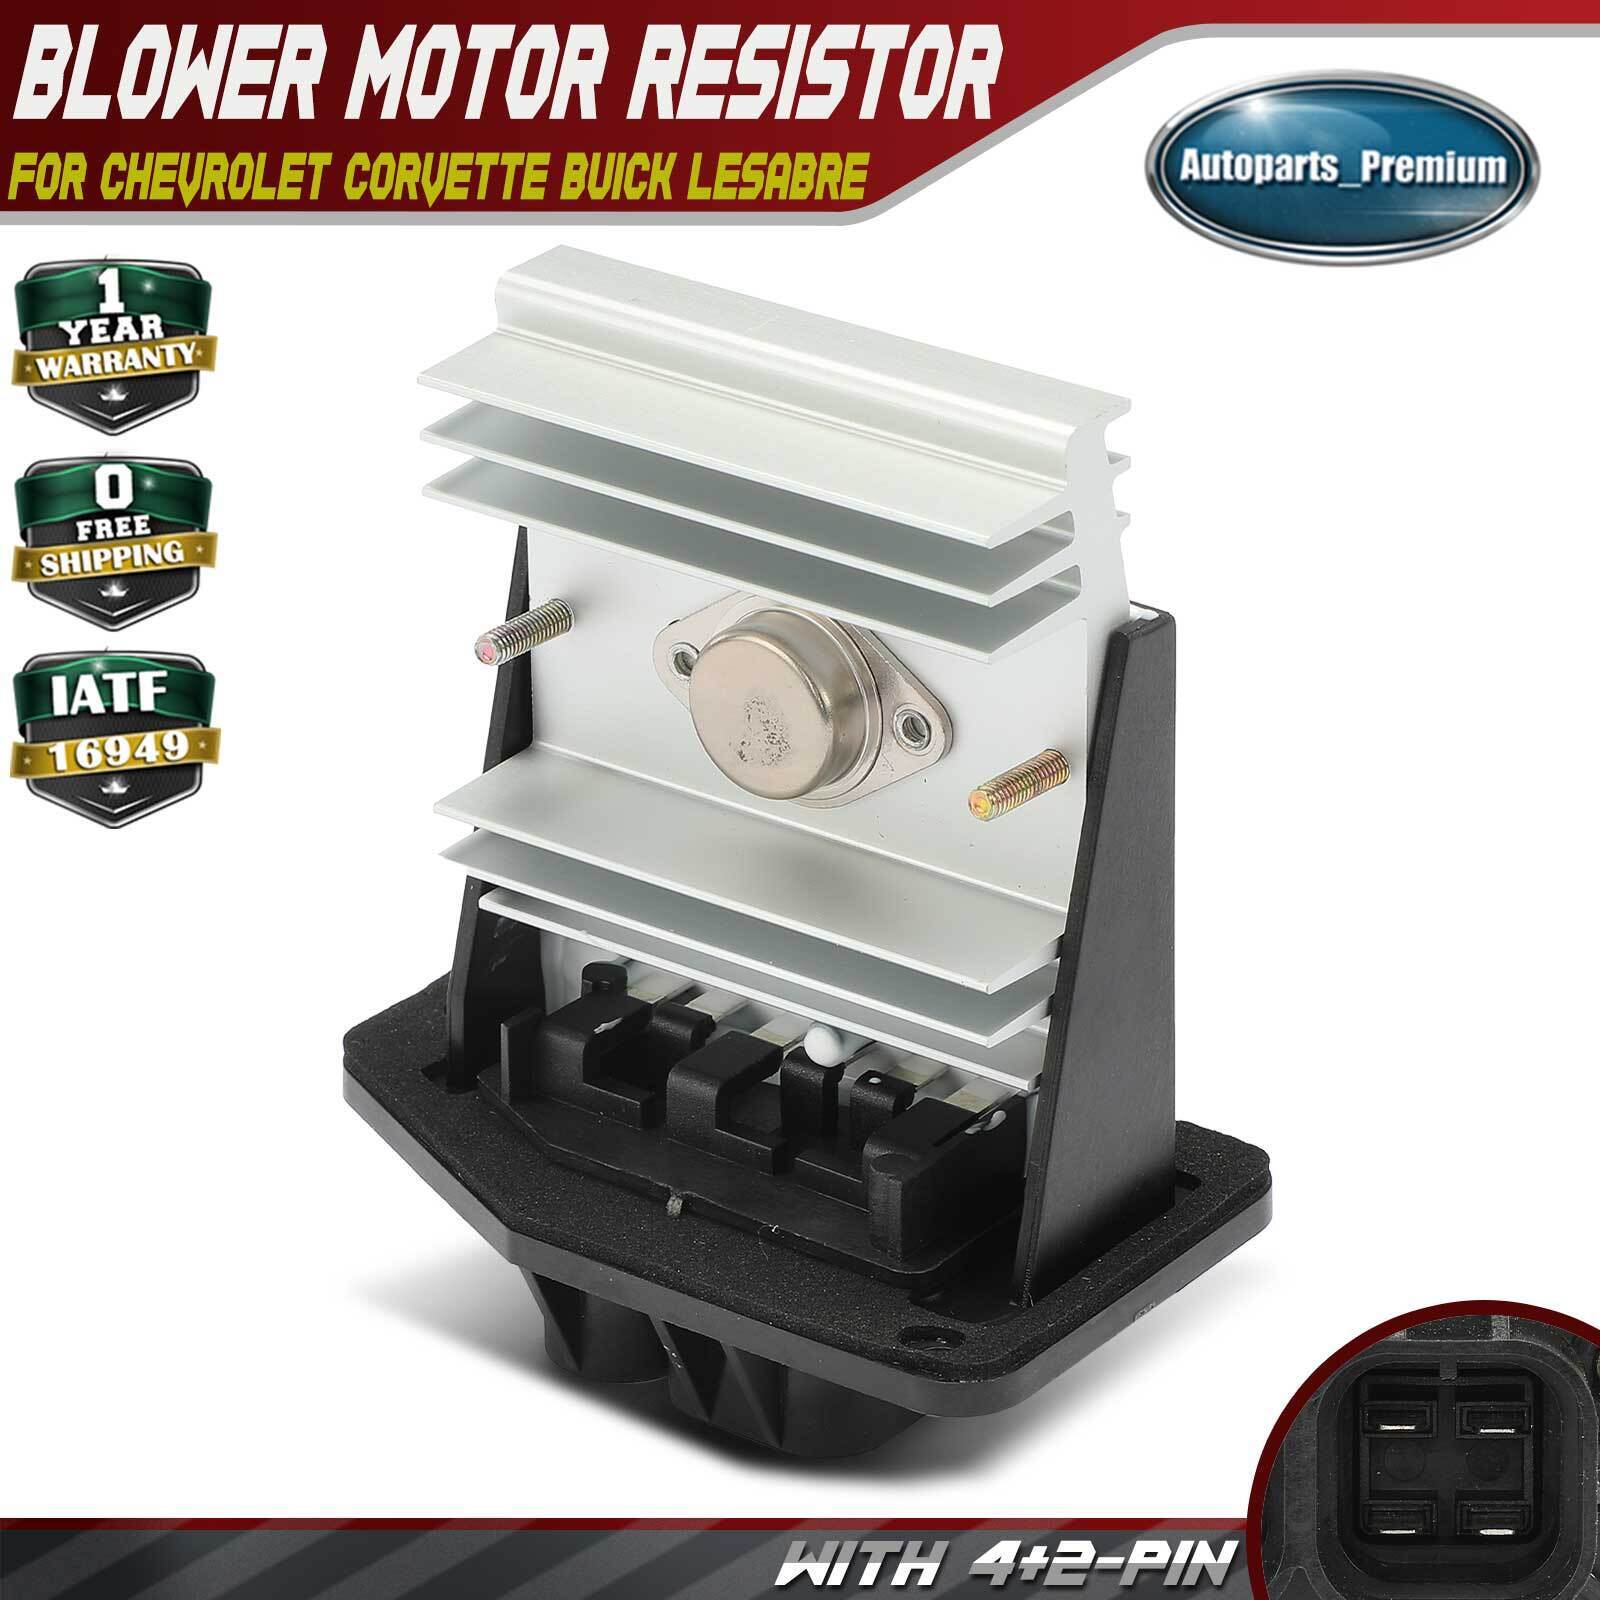 HVAC Blower Motor Resistor for Chevrolet Corvette Buick LeSabre Cadillac Olds